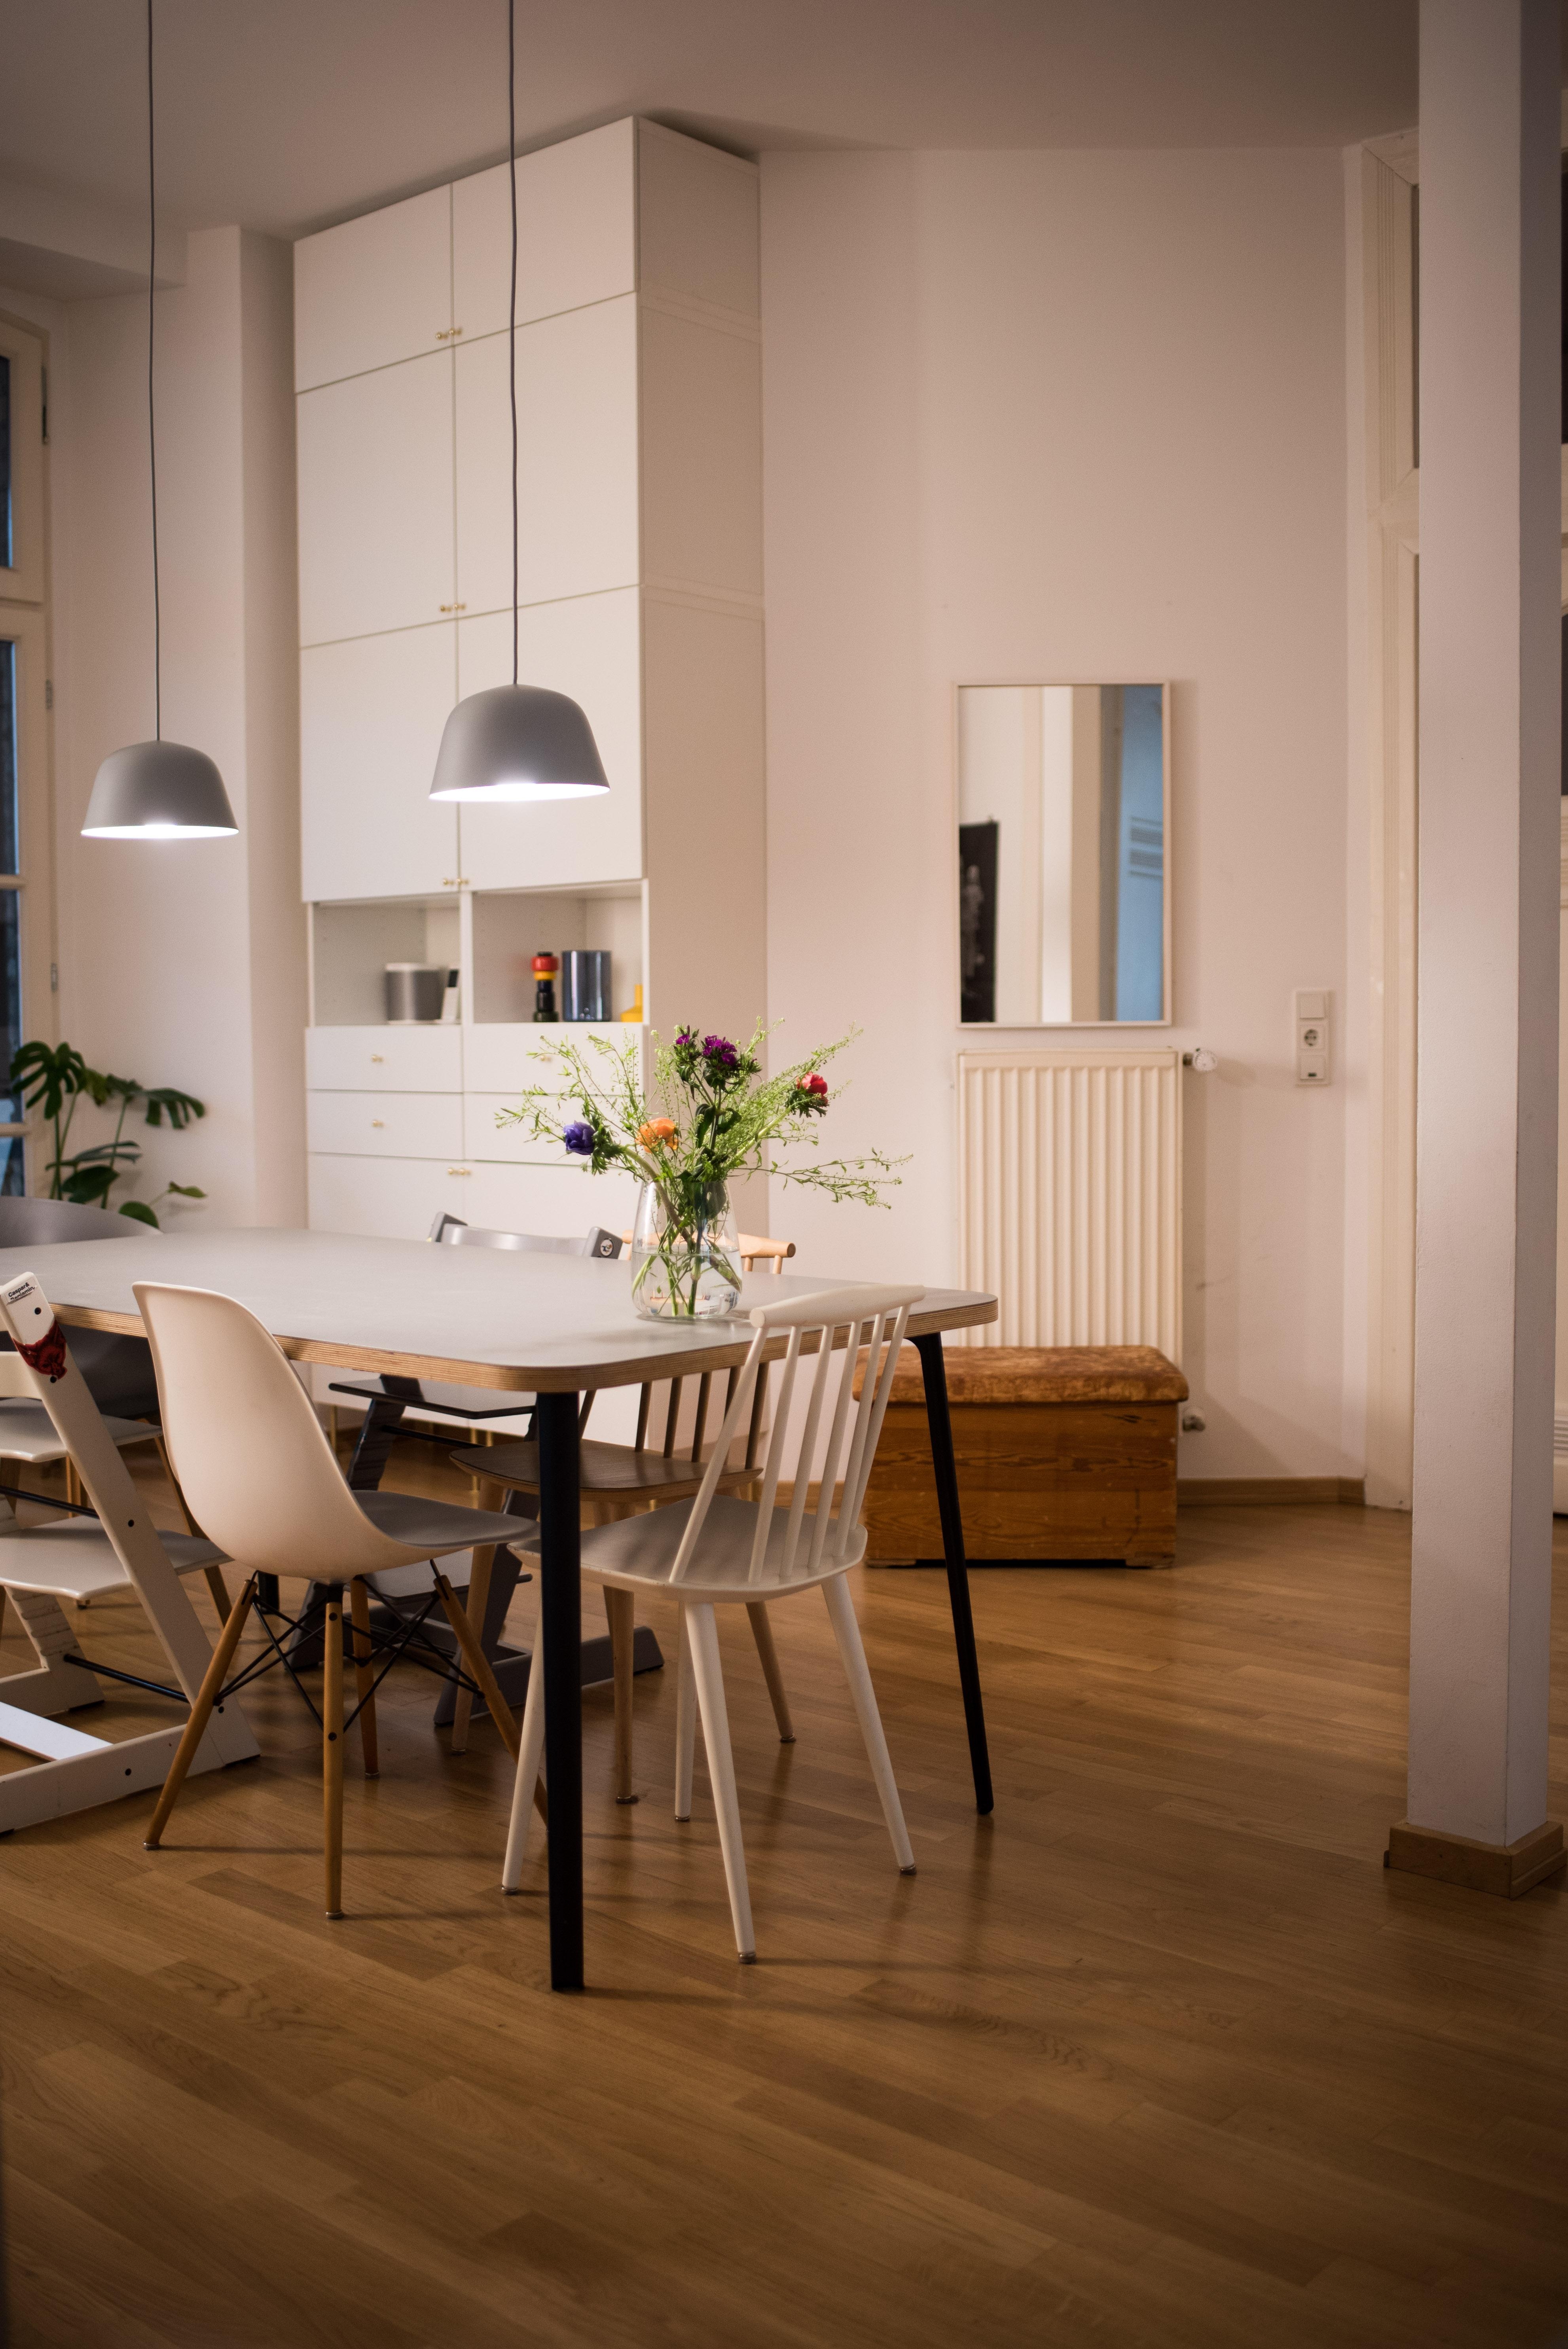 Kitchenview #küche #altbau #wohnküche #interior #blumen #küchentisch